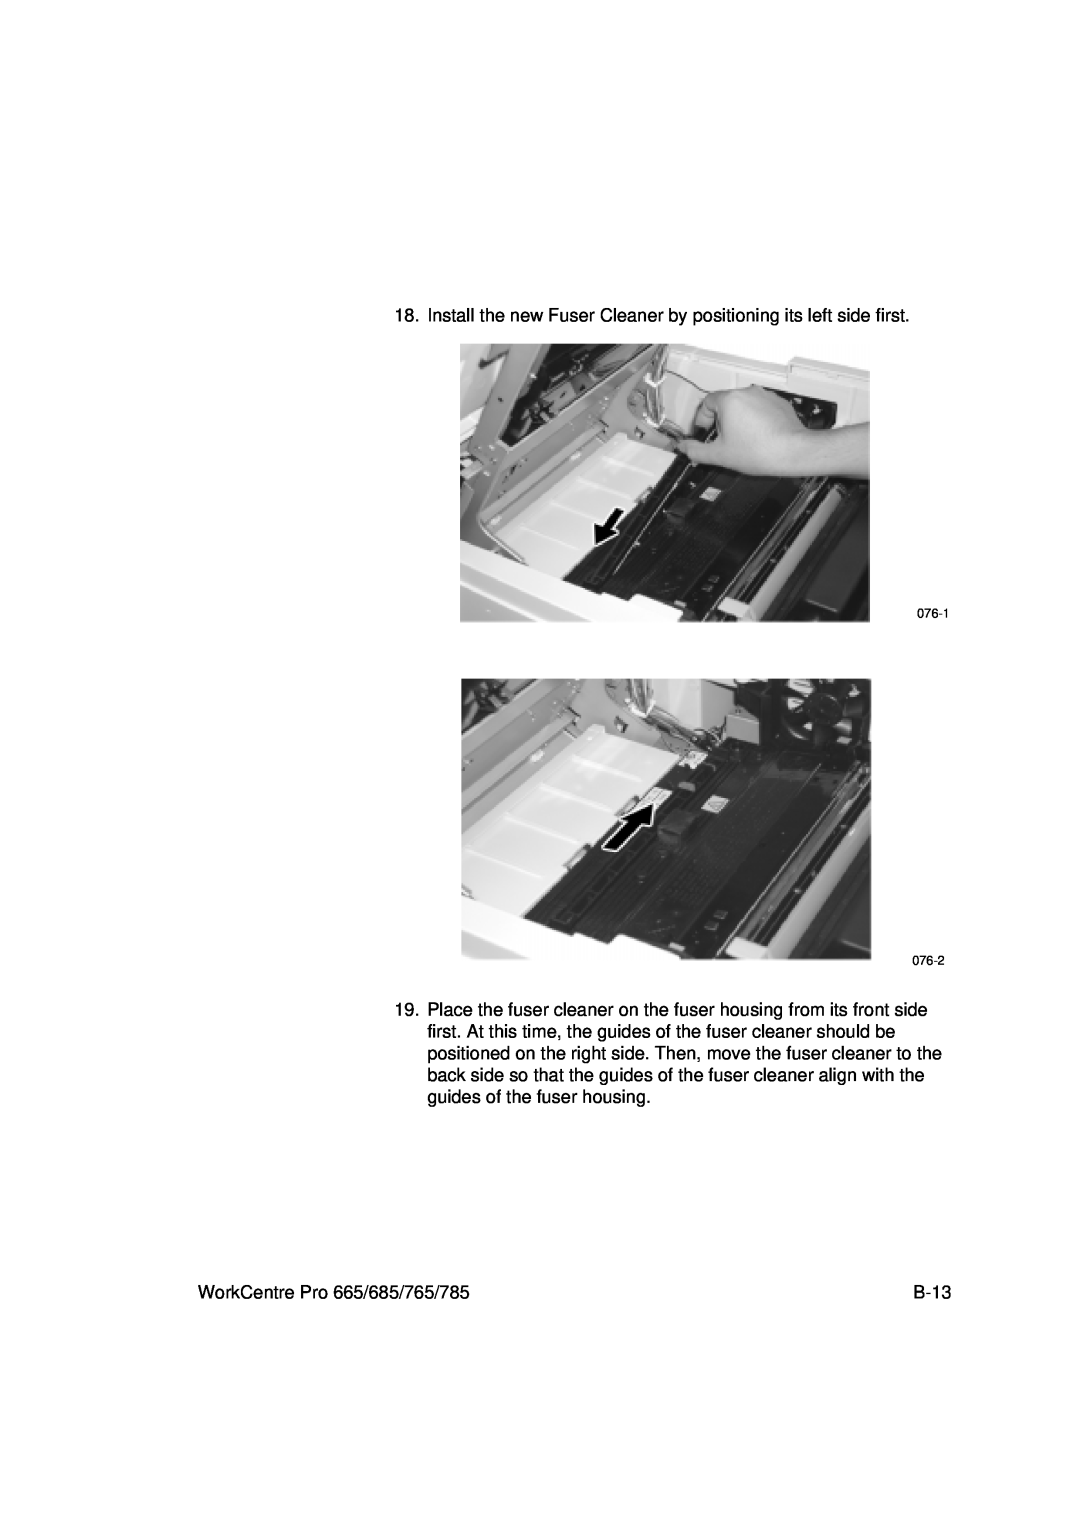 Xerox manual WorkCentre Pro 665/685/765/785 